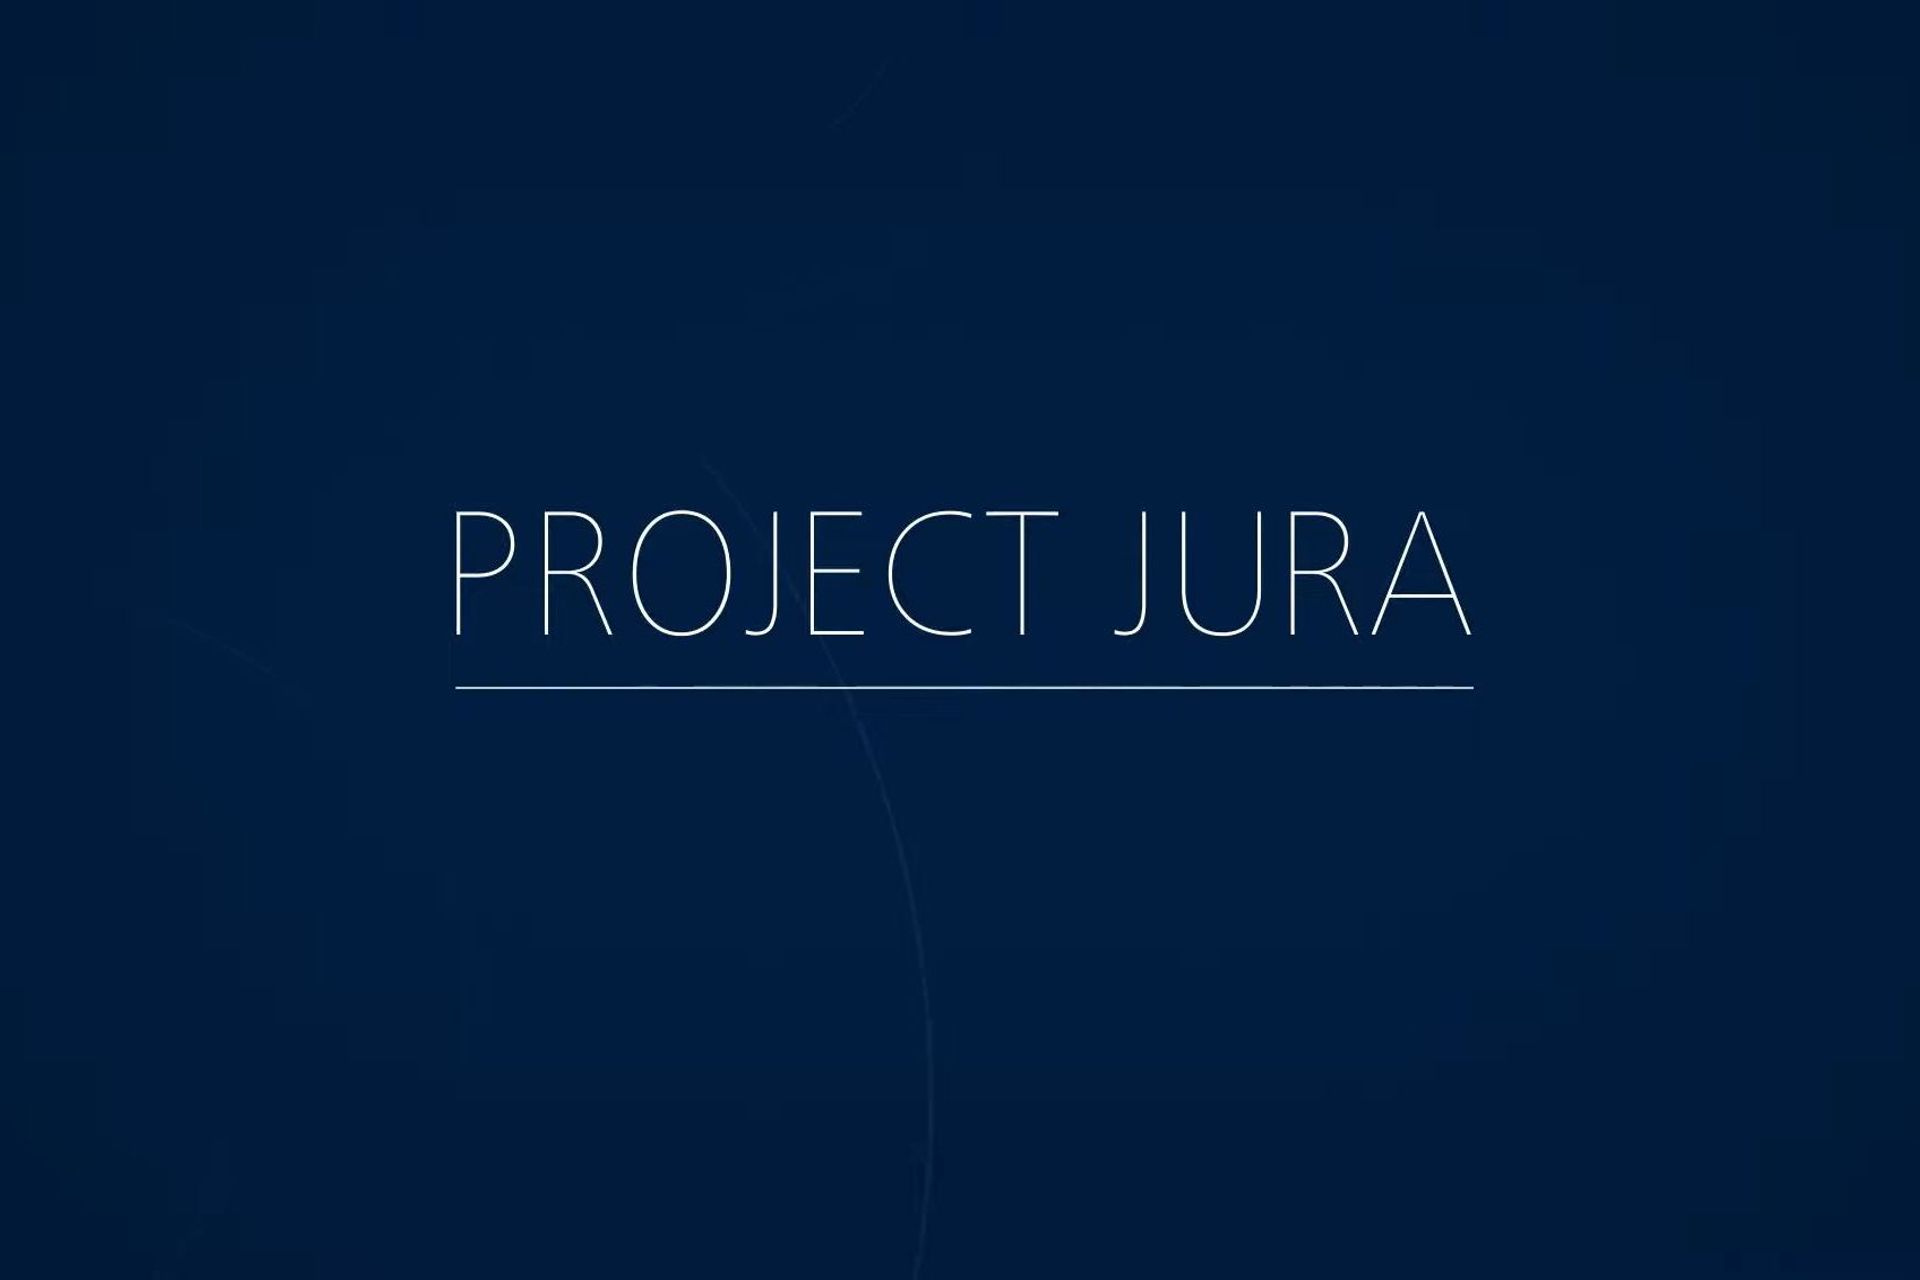 הלוגו של "פרויקט Jura" מיושם על ידי הבנק הלאומי של שוויץ, בנק דה פראנס ומרכז החדשנות של BIS